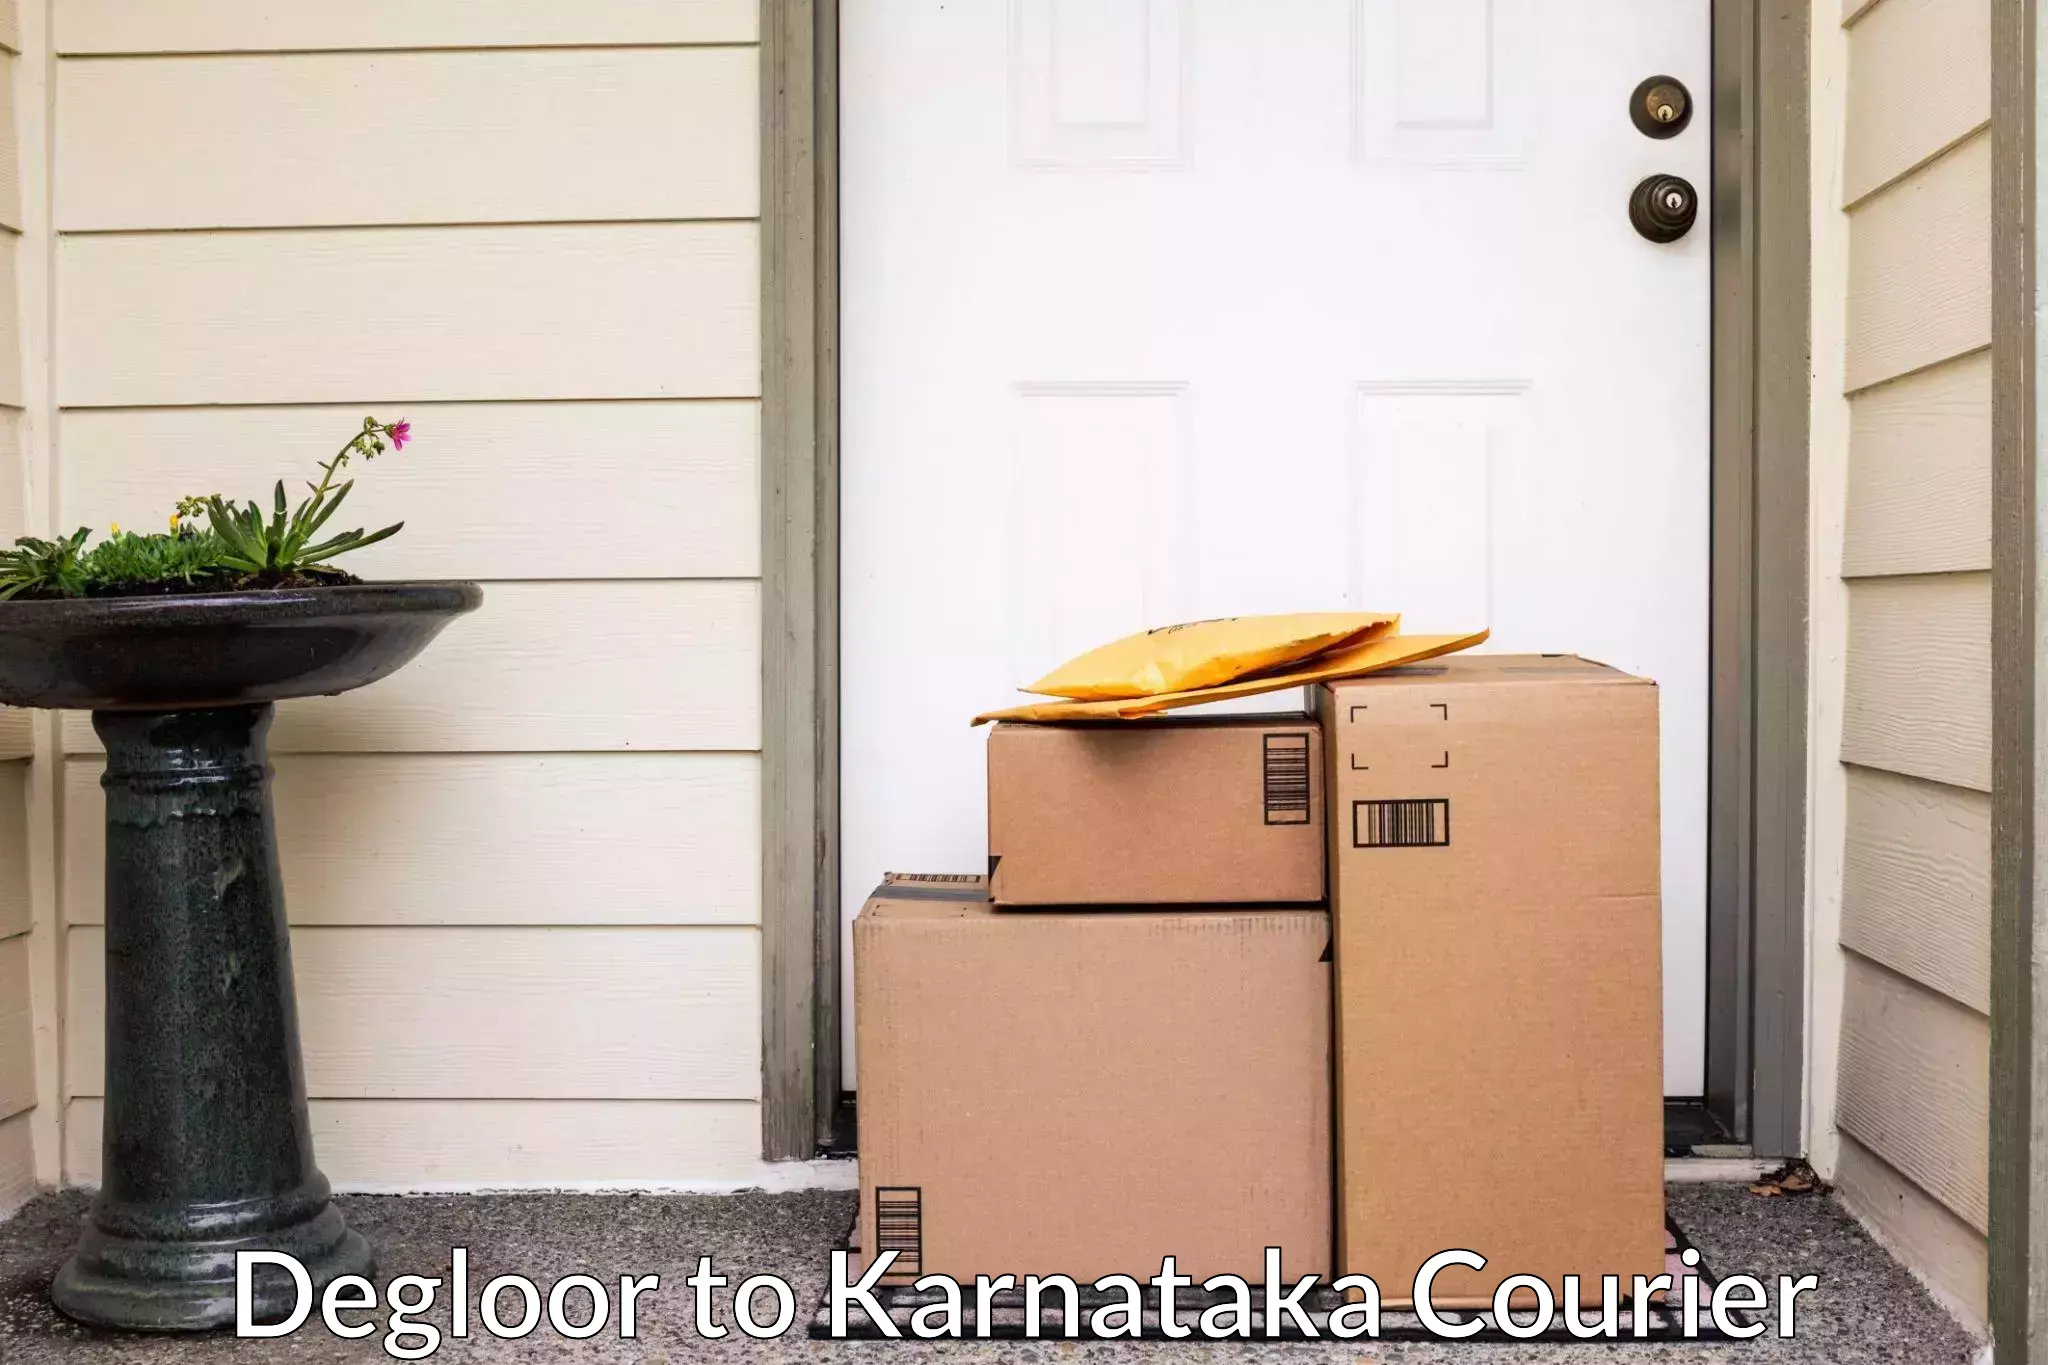 Household moving experts Degloor to Chikkanayakanahalli